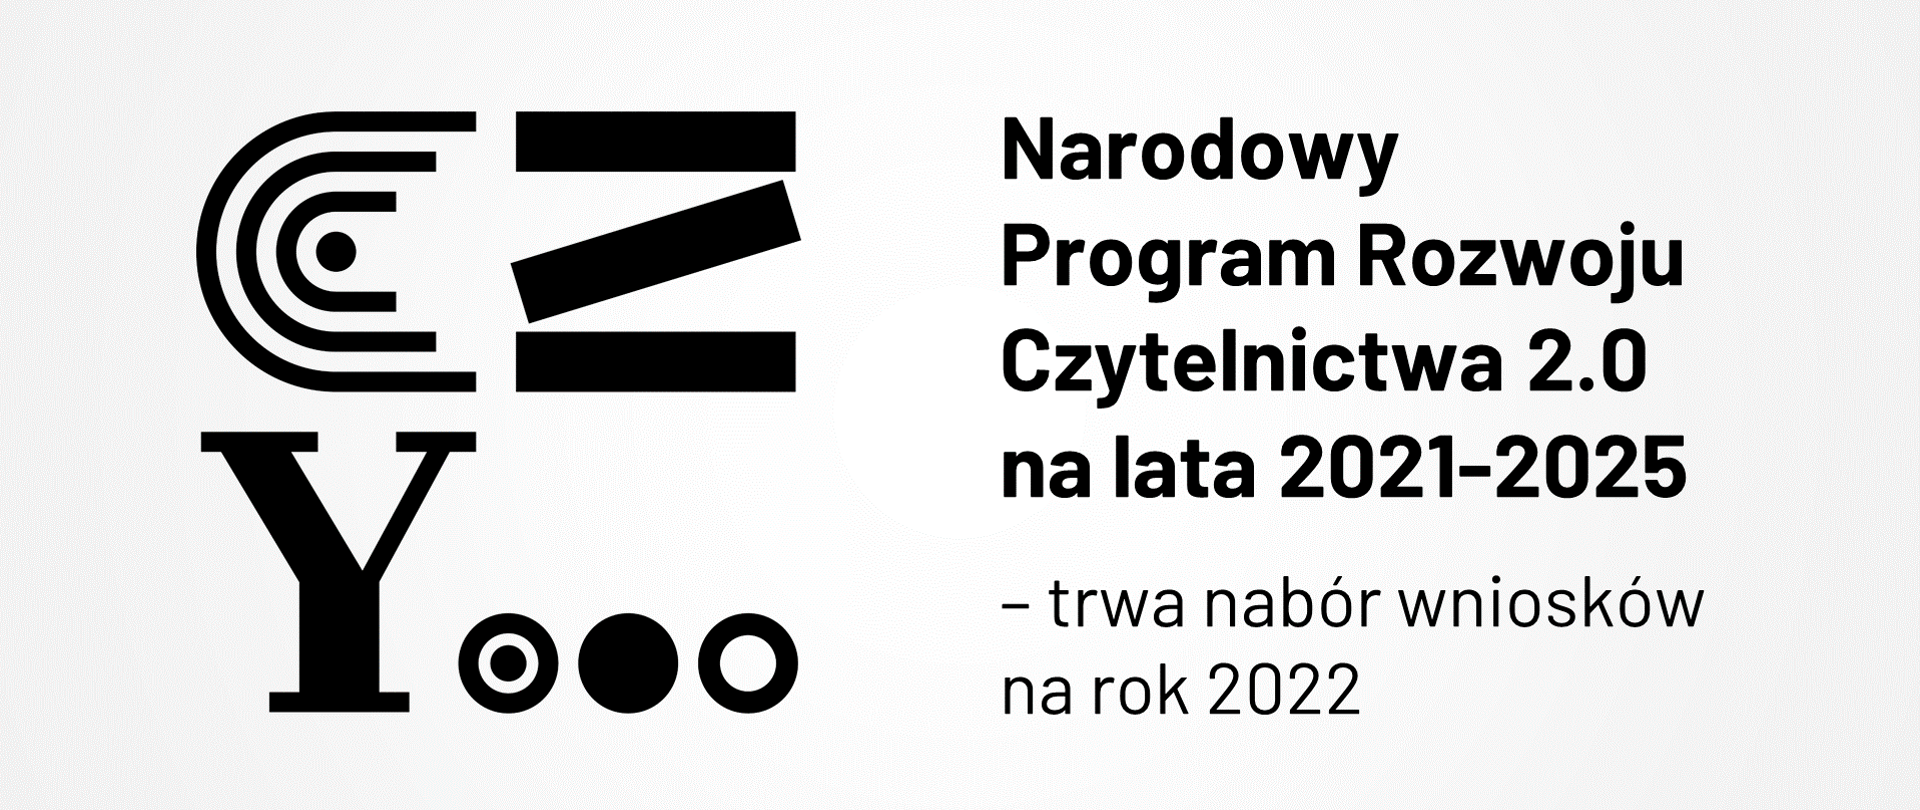 Logotyp Narodowego Programu Rozwoju Czytelnictwa 2.0. Lekko szare tło, czarne znaki: po lewej stronie literki C i Z, poniżej Y i wielokropek. Po prawej napis Narodowy Program Rozwoju Czytelnictwa 2.0 - trwa nabór wniosków na rok 2022